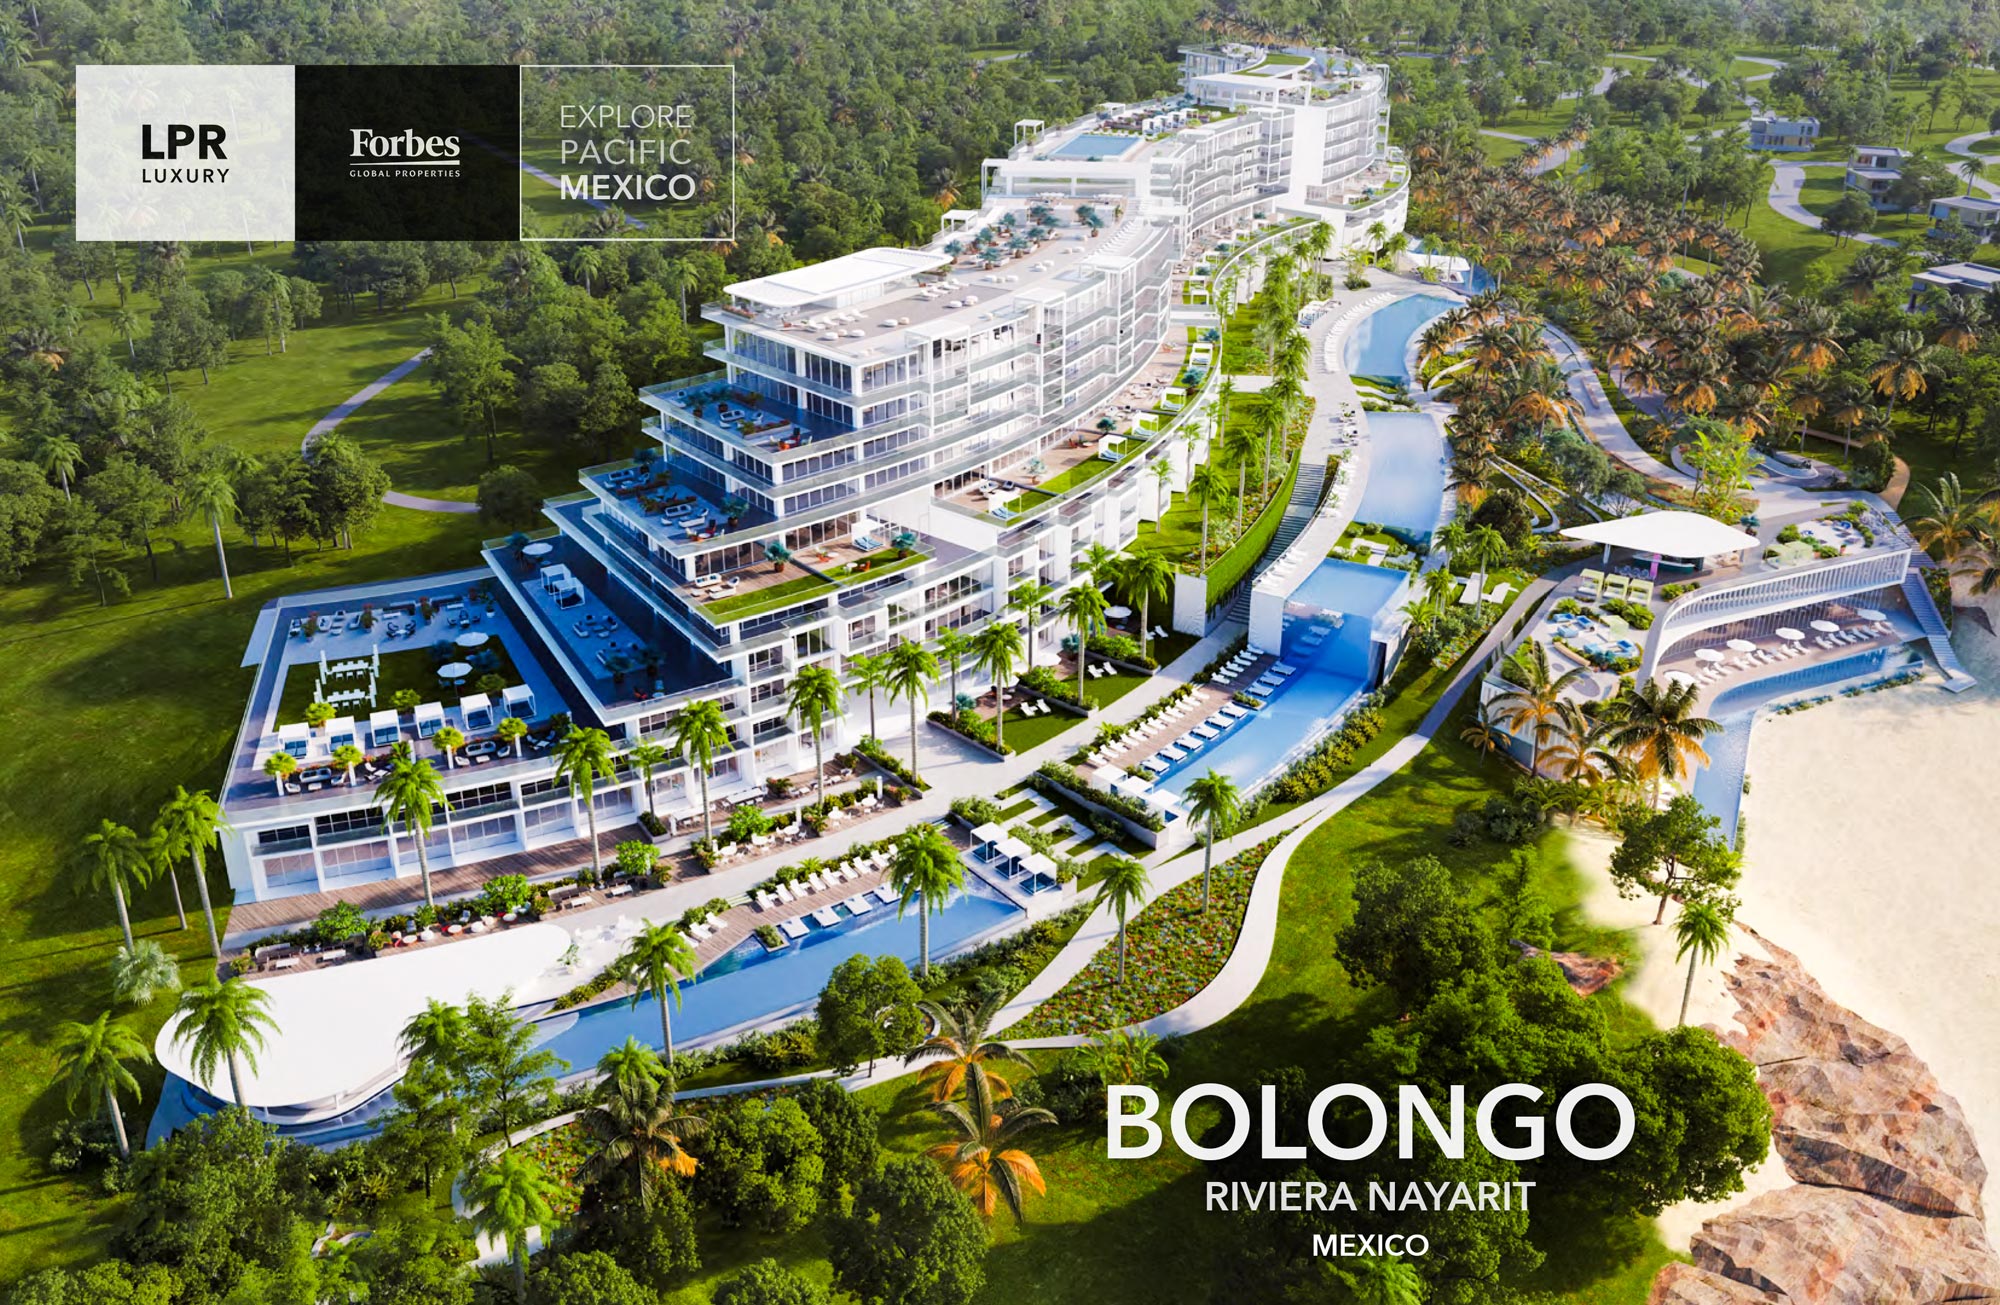 Phase 3 at Bolongo - Punta de Mita beachfront condos and villas - Riviera Nayairt - North shore Puerto Vallarta real estate in Mexico